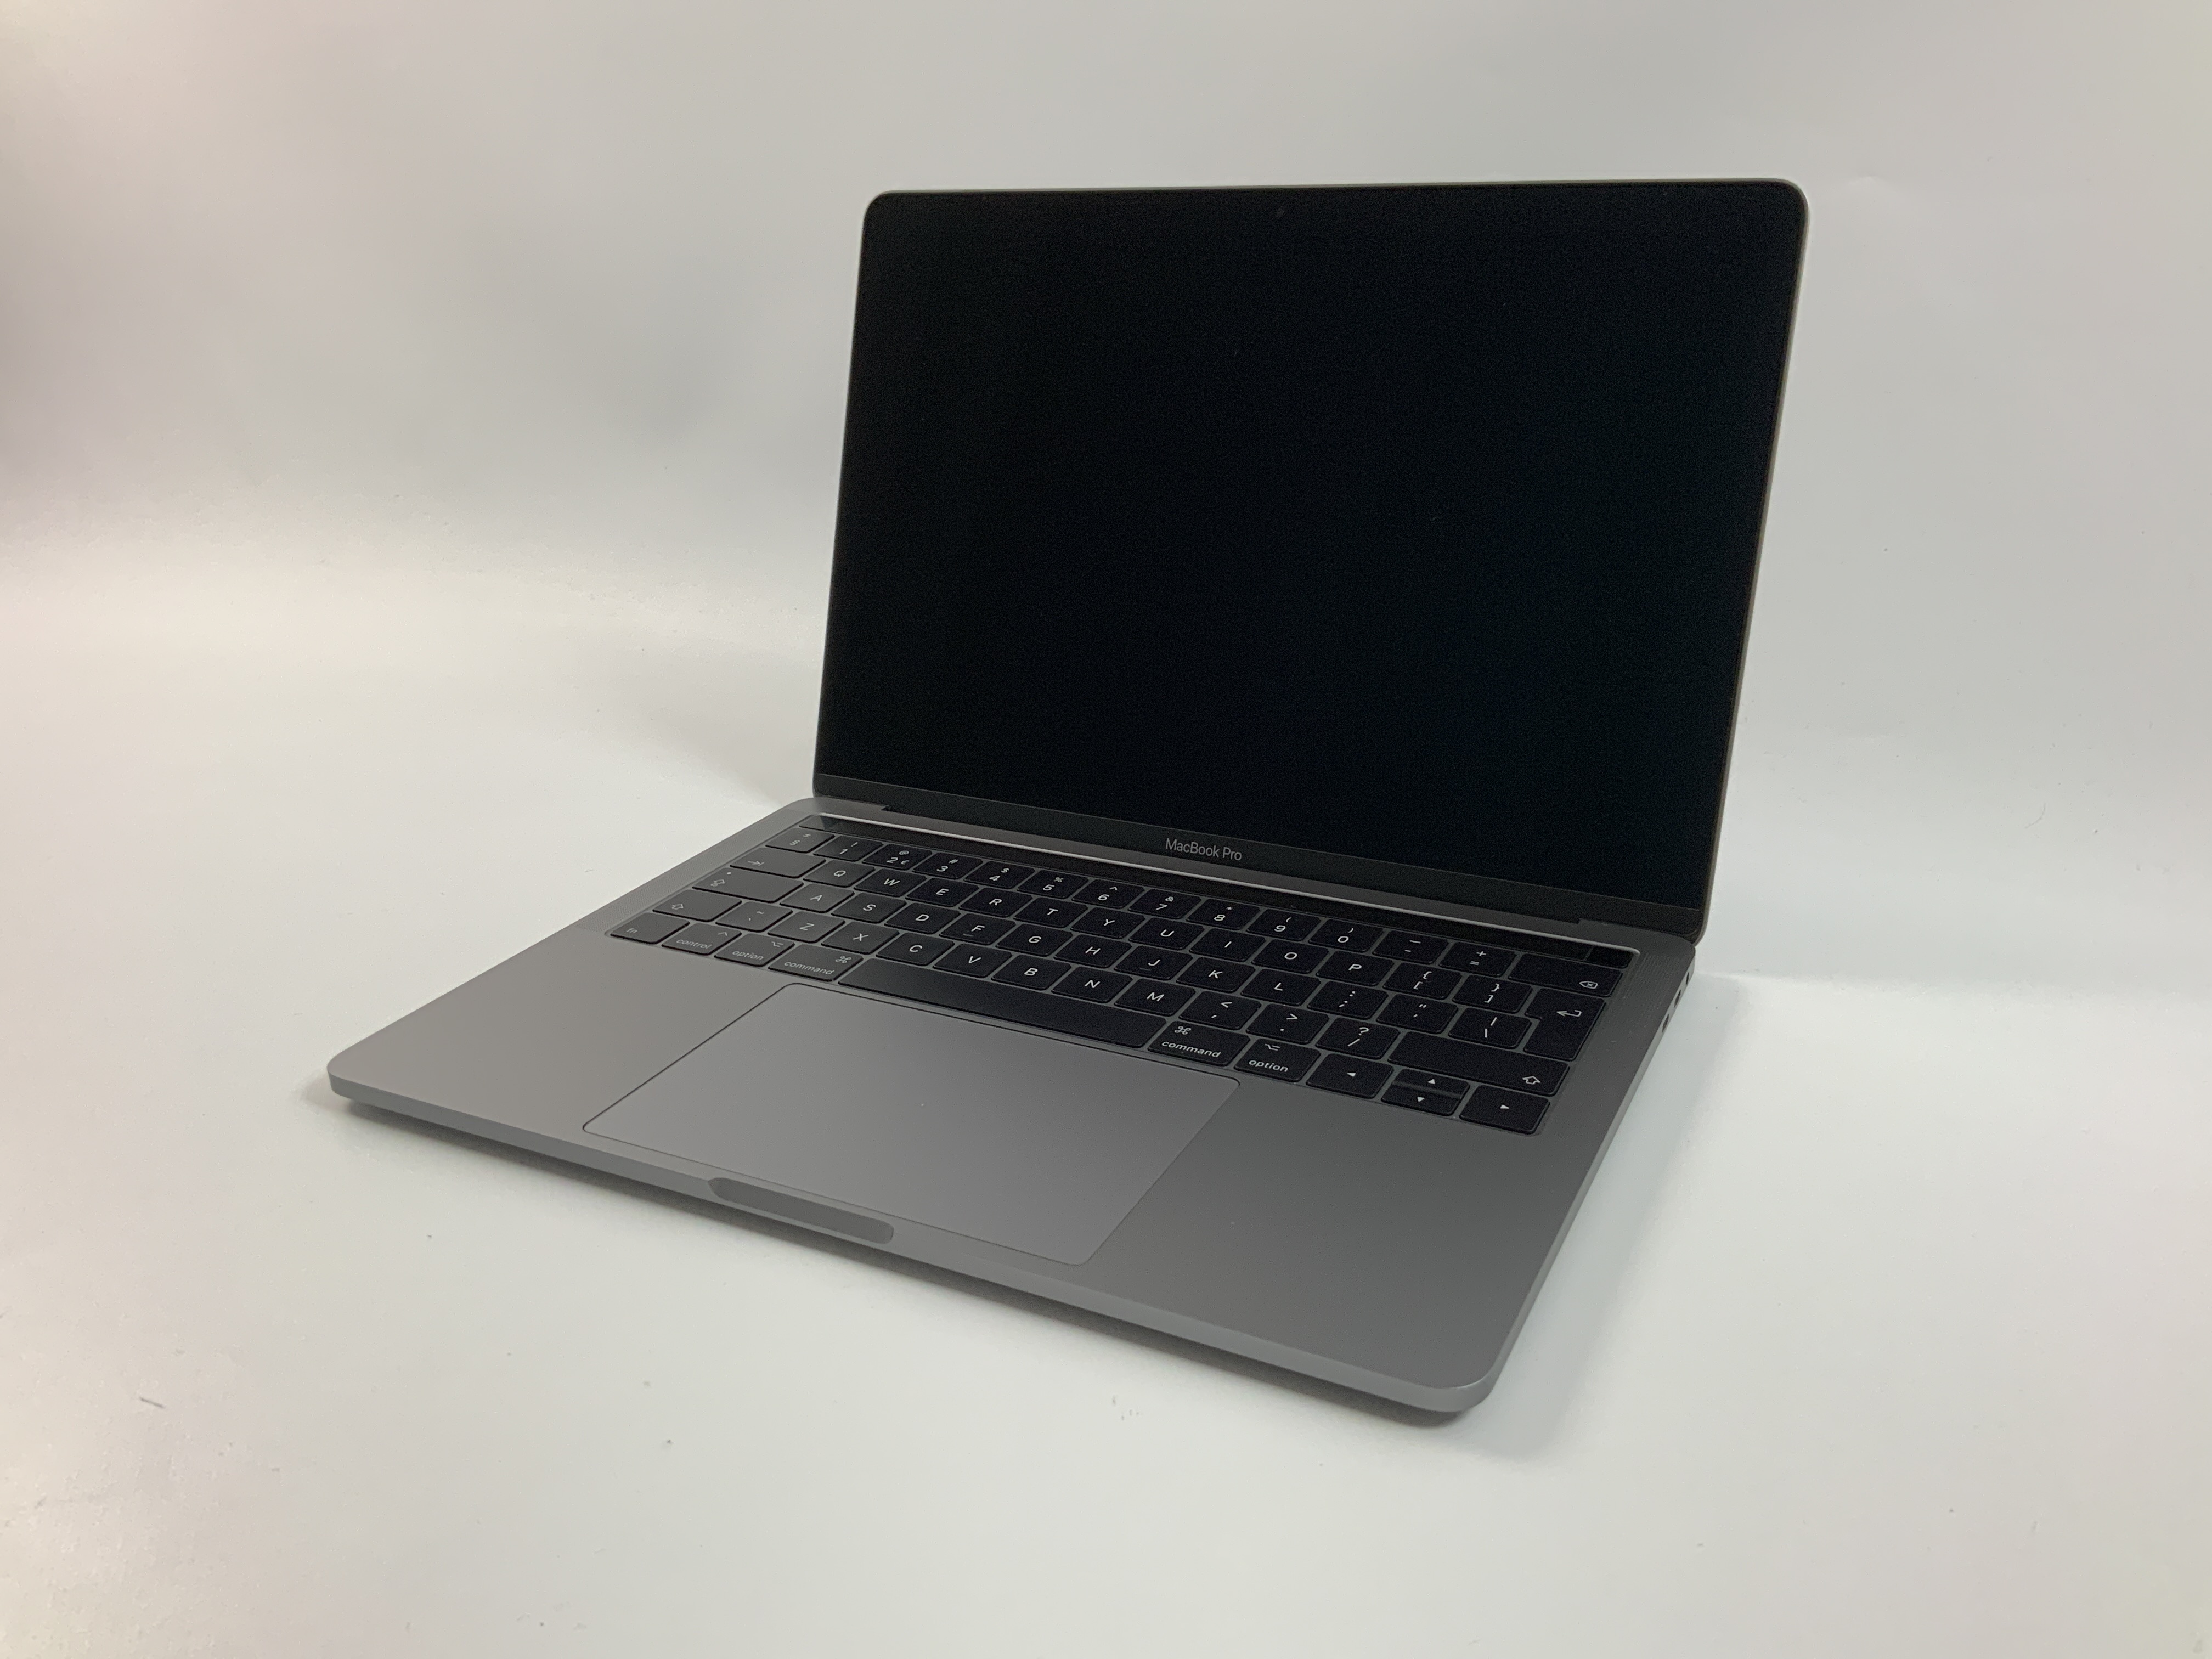 MacBook Pro 13" 4TBT Mid 2017 (Intel Core i5 3.1 GHz 16 GB RAM 1 TB SSD), Space Gray, Intel Core i5 3.1 GHz, 16 GB RAM, 1 TB SSD, Bild 1